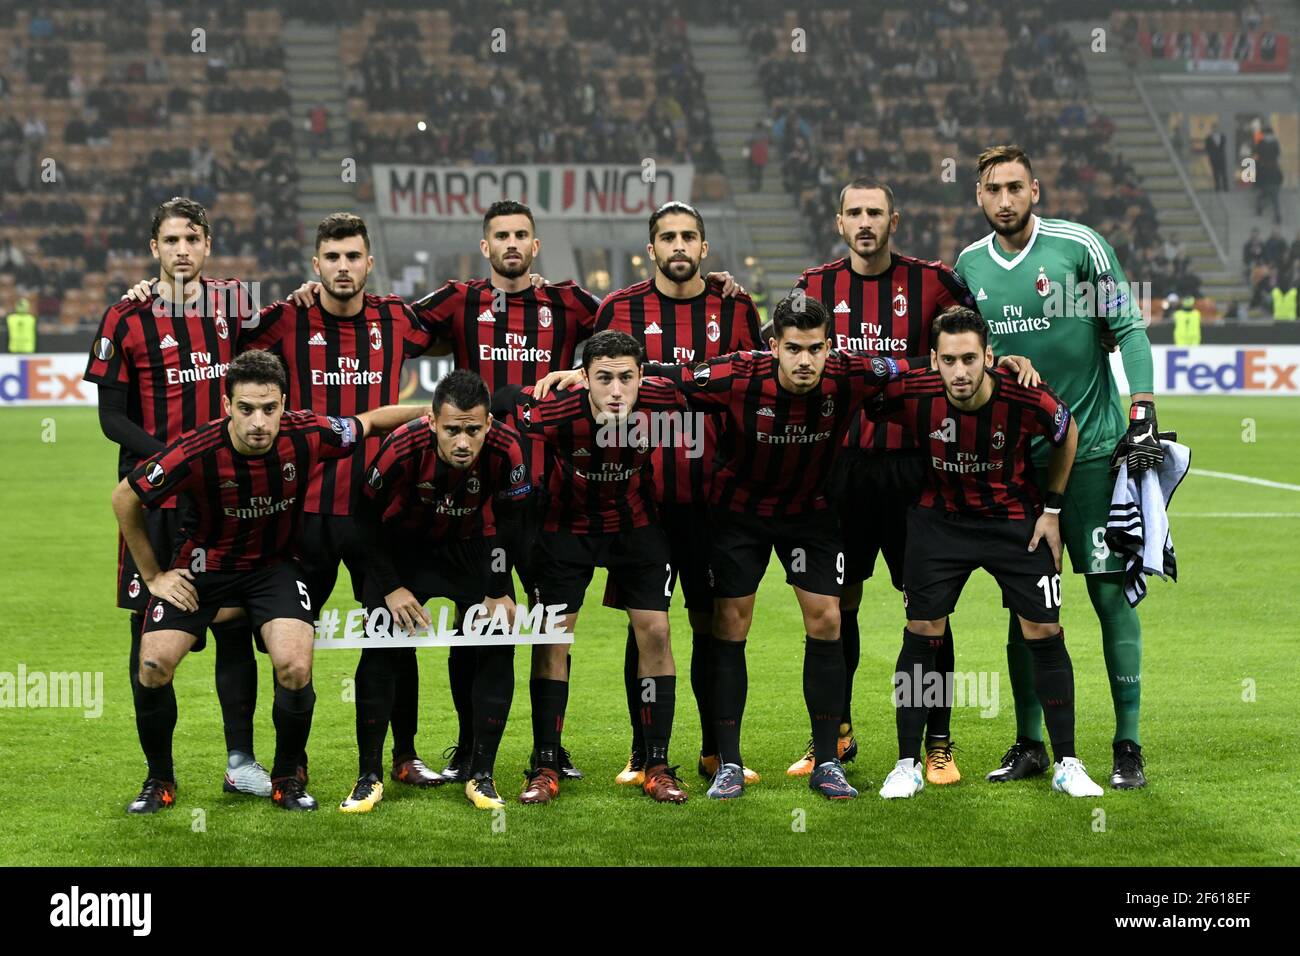 Milan calcio e fotografie stock ad risoluzione - Alamy